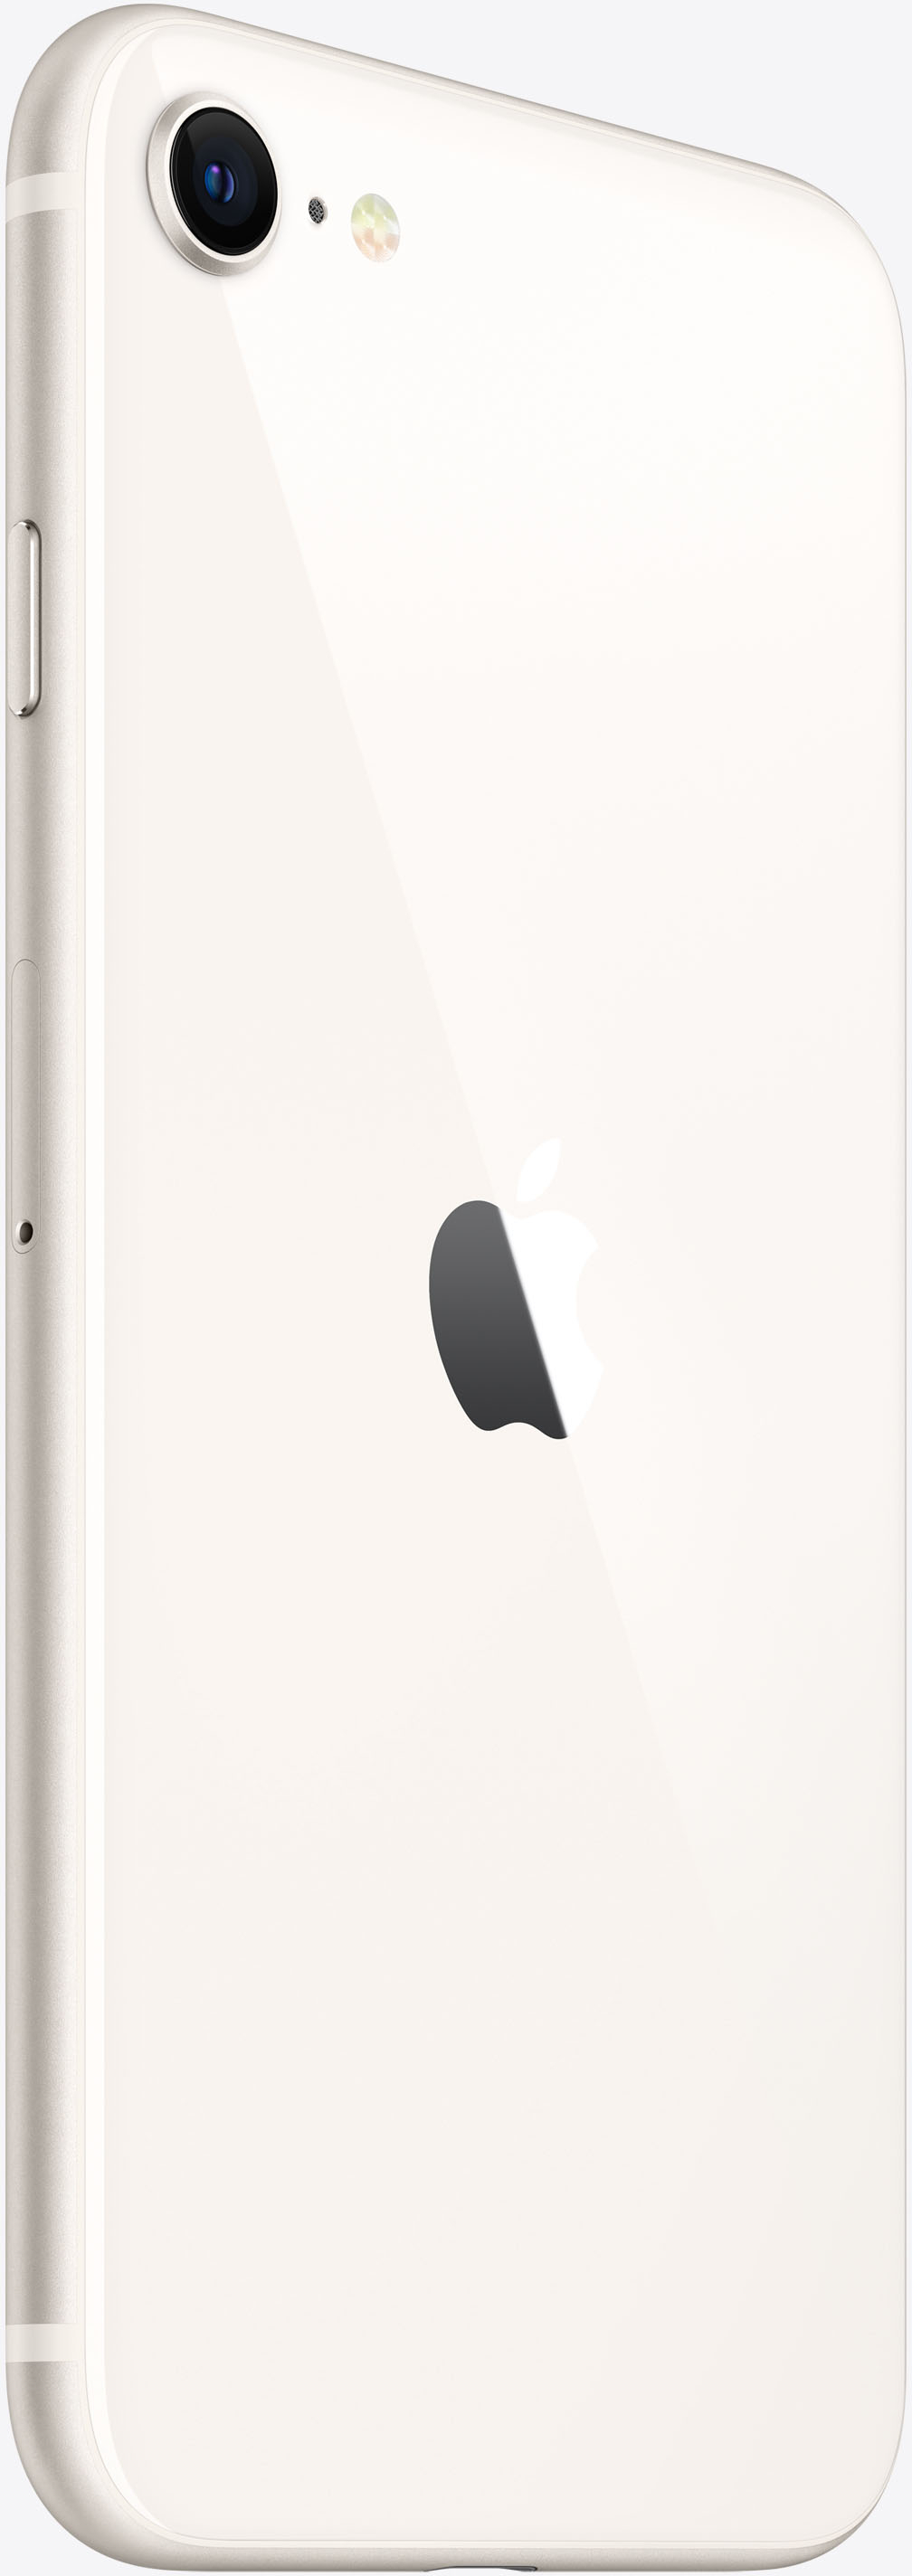 iPhone SE 128G ホワイト